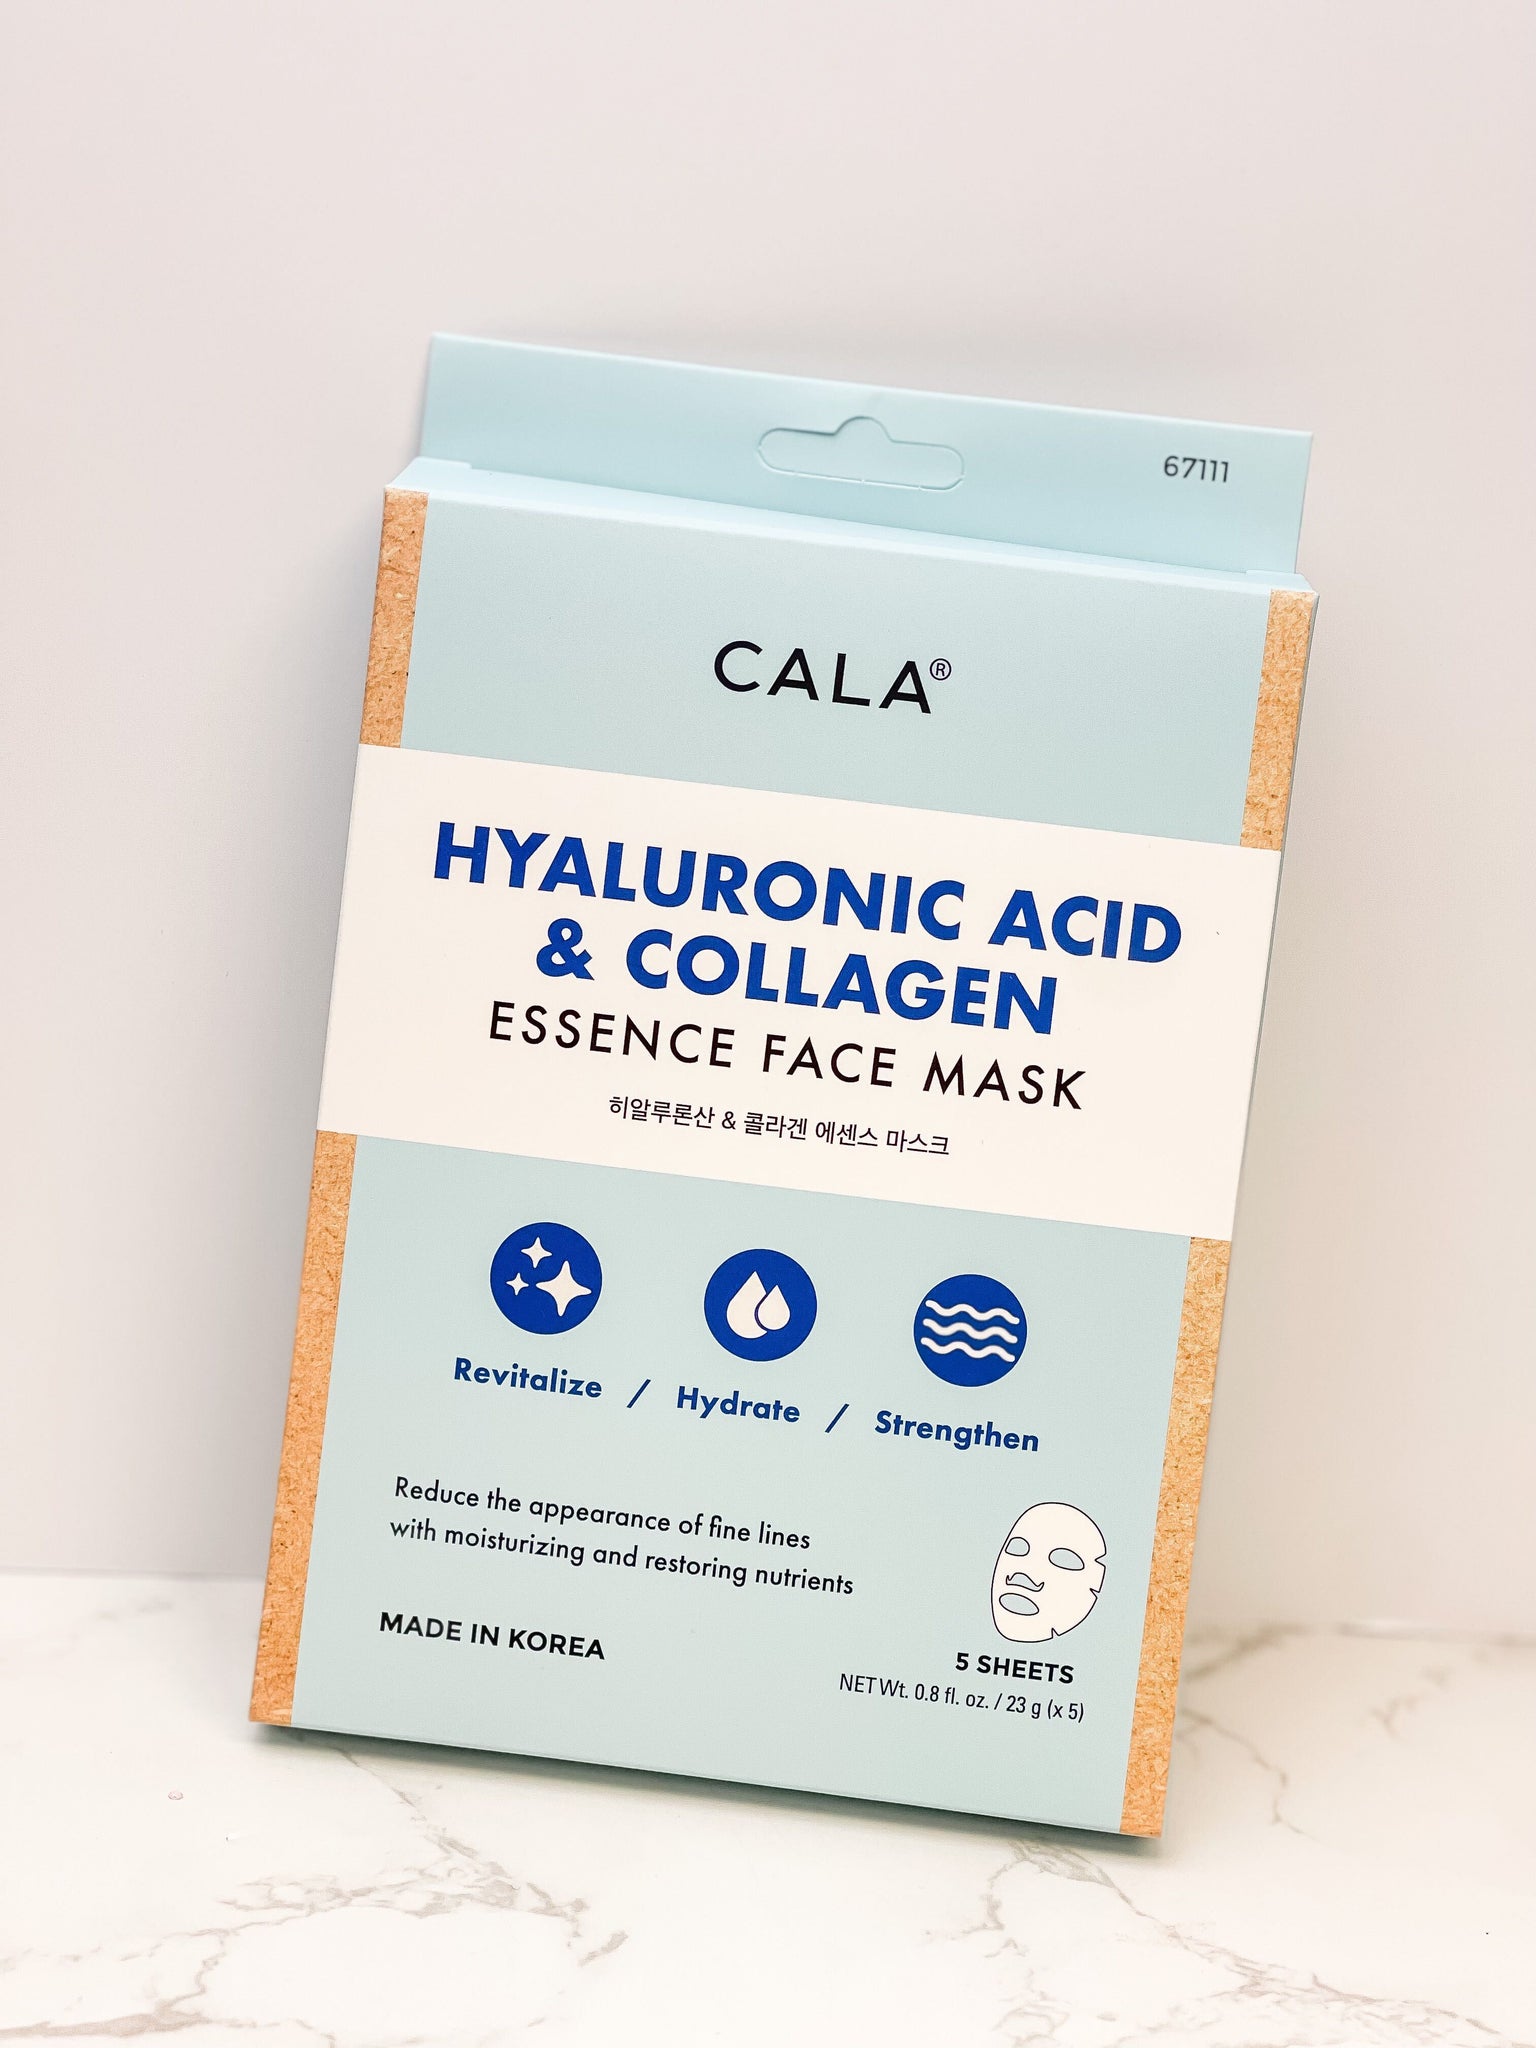 Hyaluronic Acid & Collagen Sheet Masks